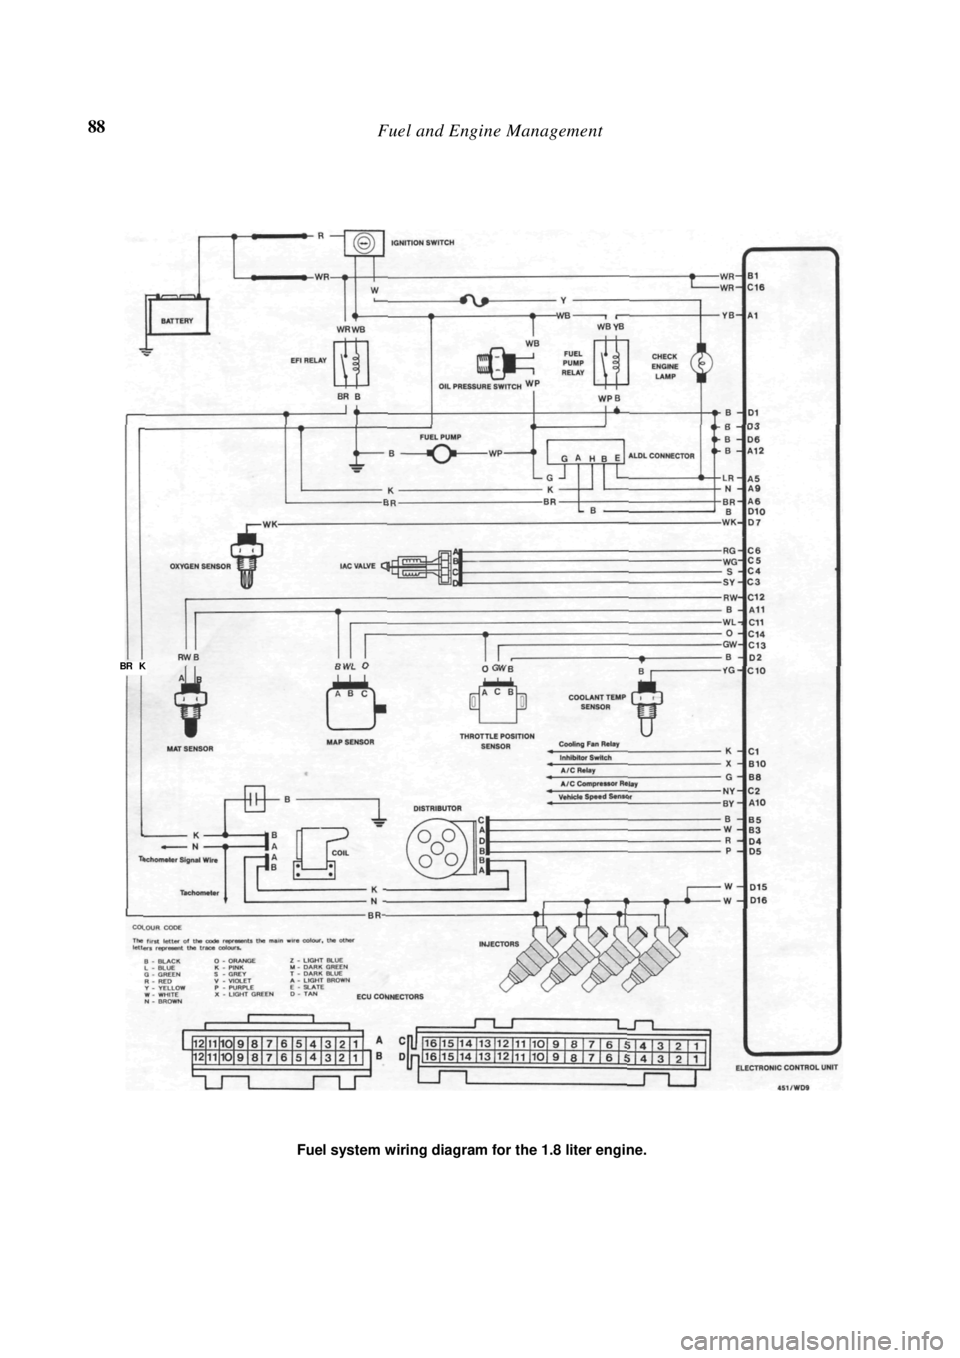 NISSAN PULSAR 1987  Workshop Manual 
88 Fuel and Engine Management 
 
 
Fuel system wiring diagram for the 1.8 liter engine. 
BR   K  